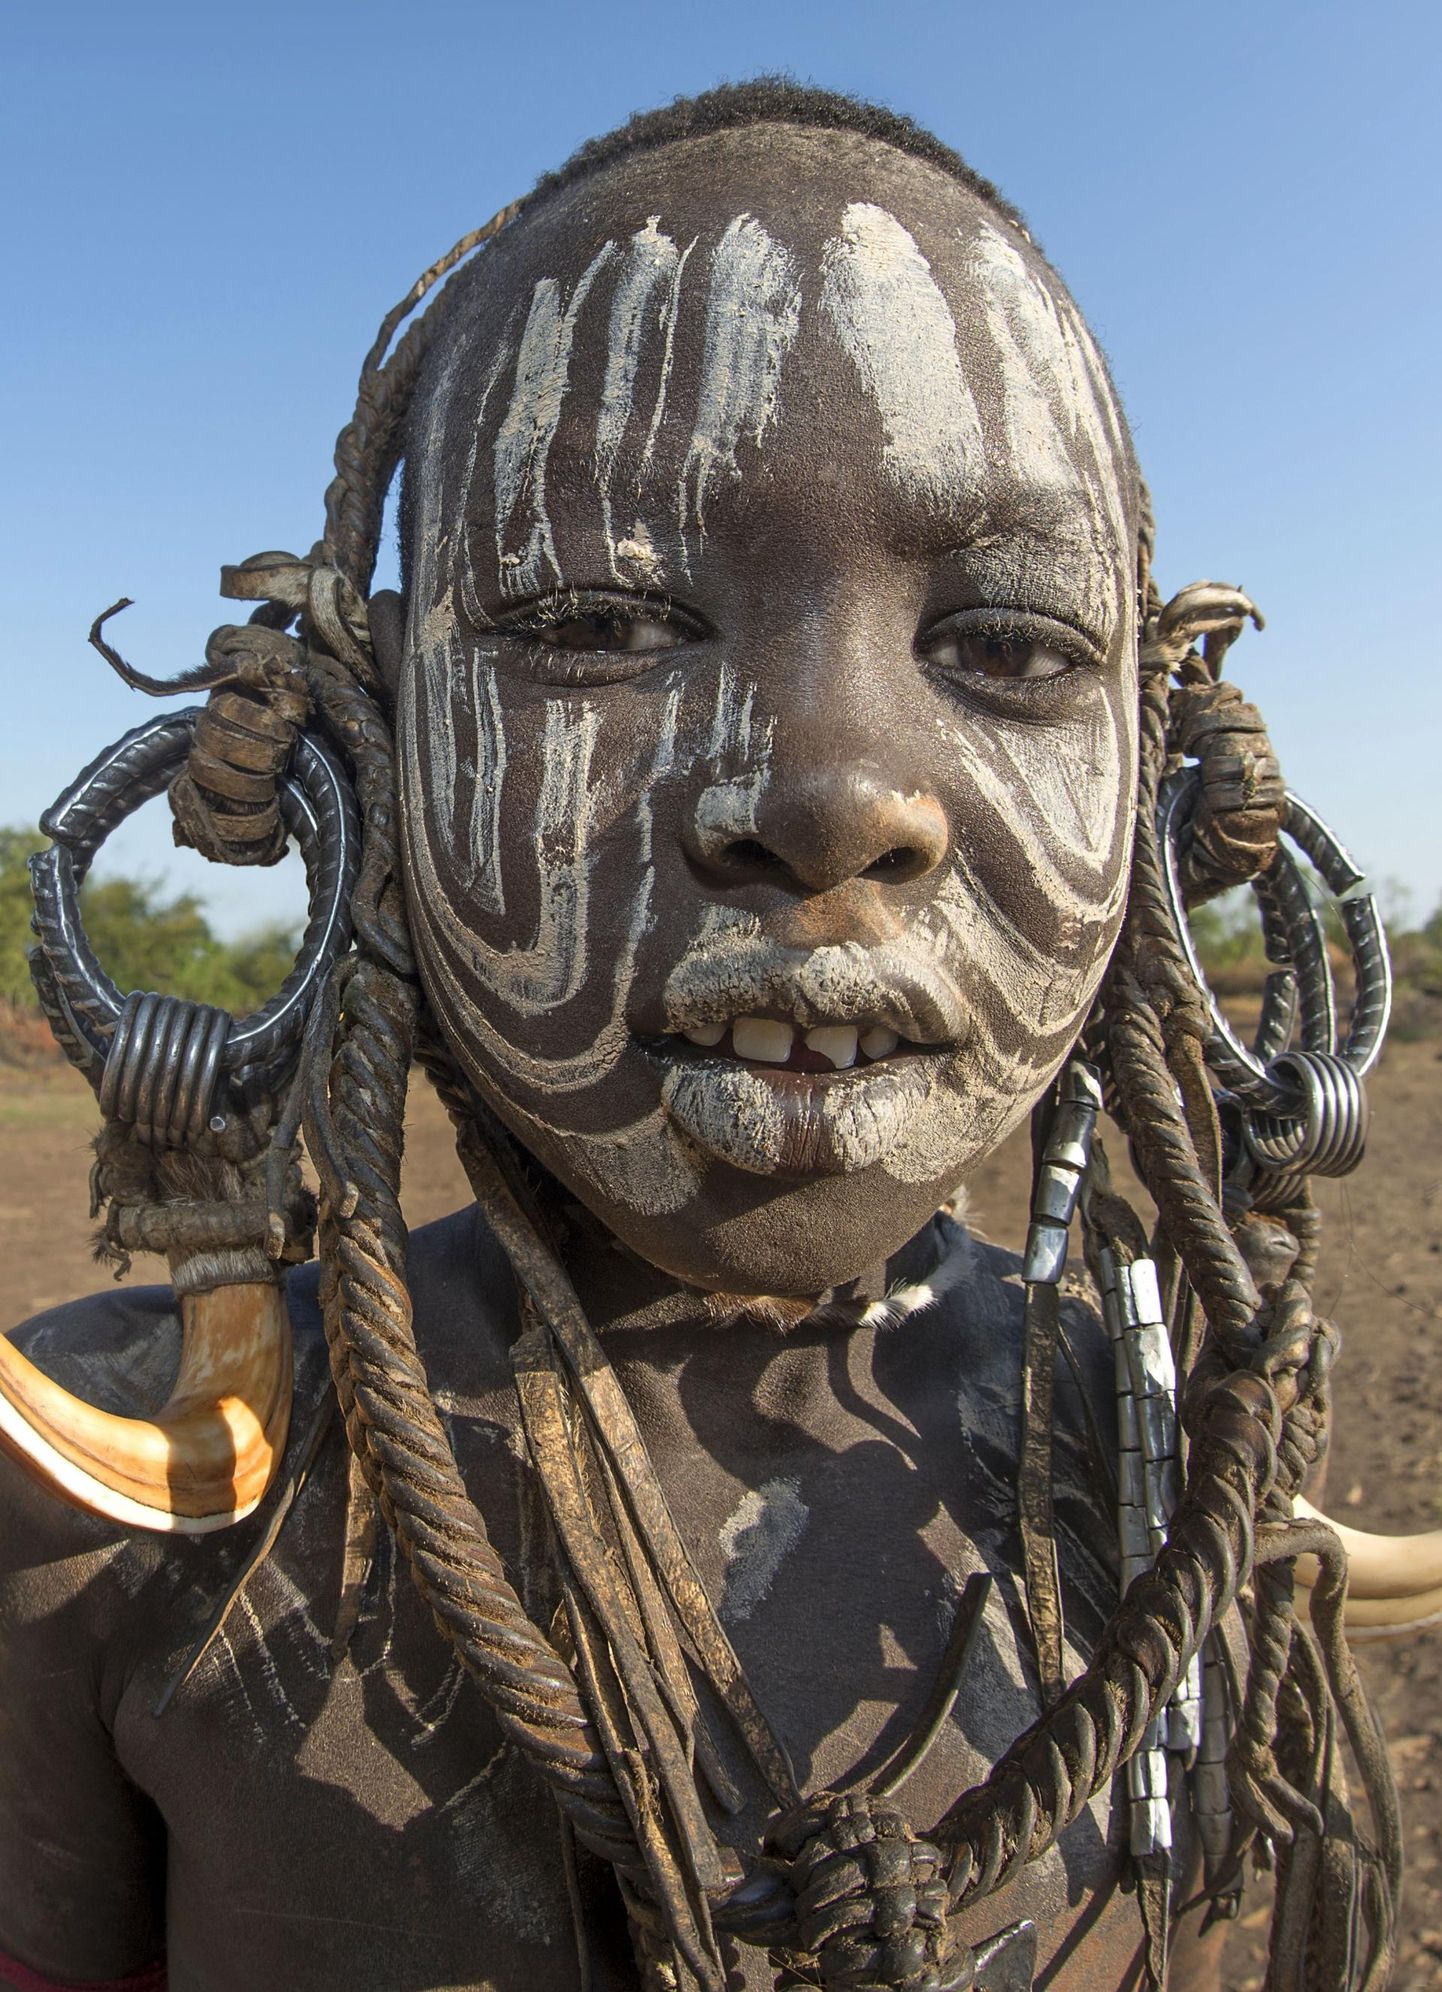 Enese augustamise ja rõngastega ehtimise komme on tuhandeid aastaid vana. See Etioopias Omo orus elava Omi hõimu liige elab iidsete tavade järgi ning eri kehaosades olevad rõngad näitavad tema positsiooni.